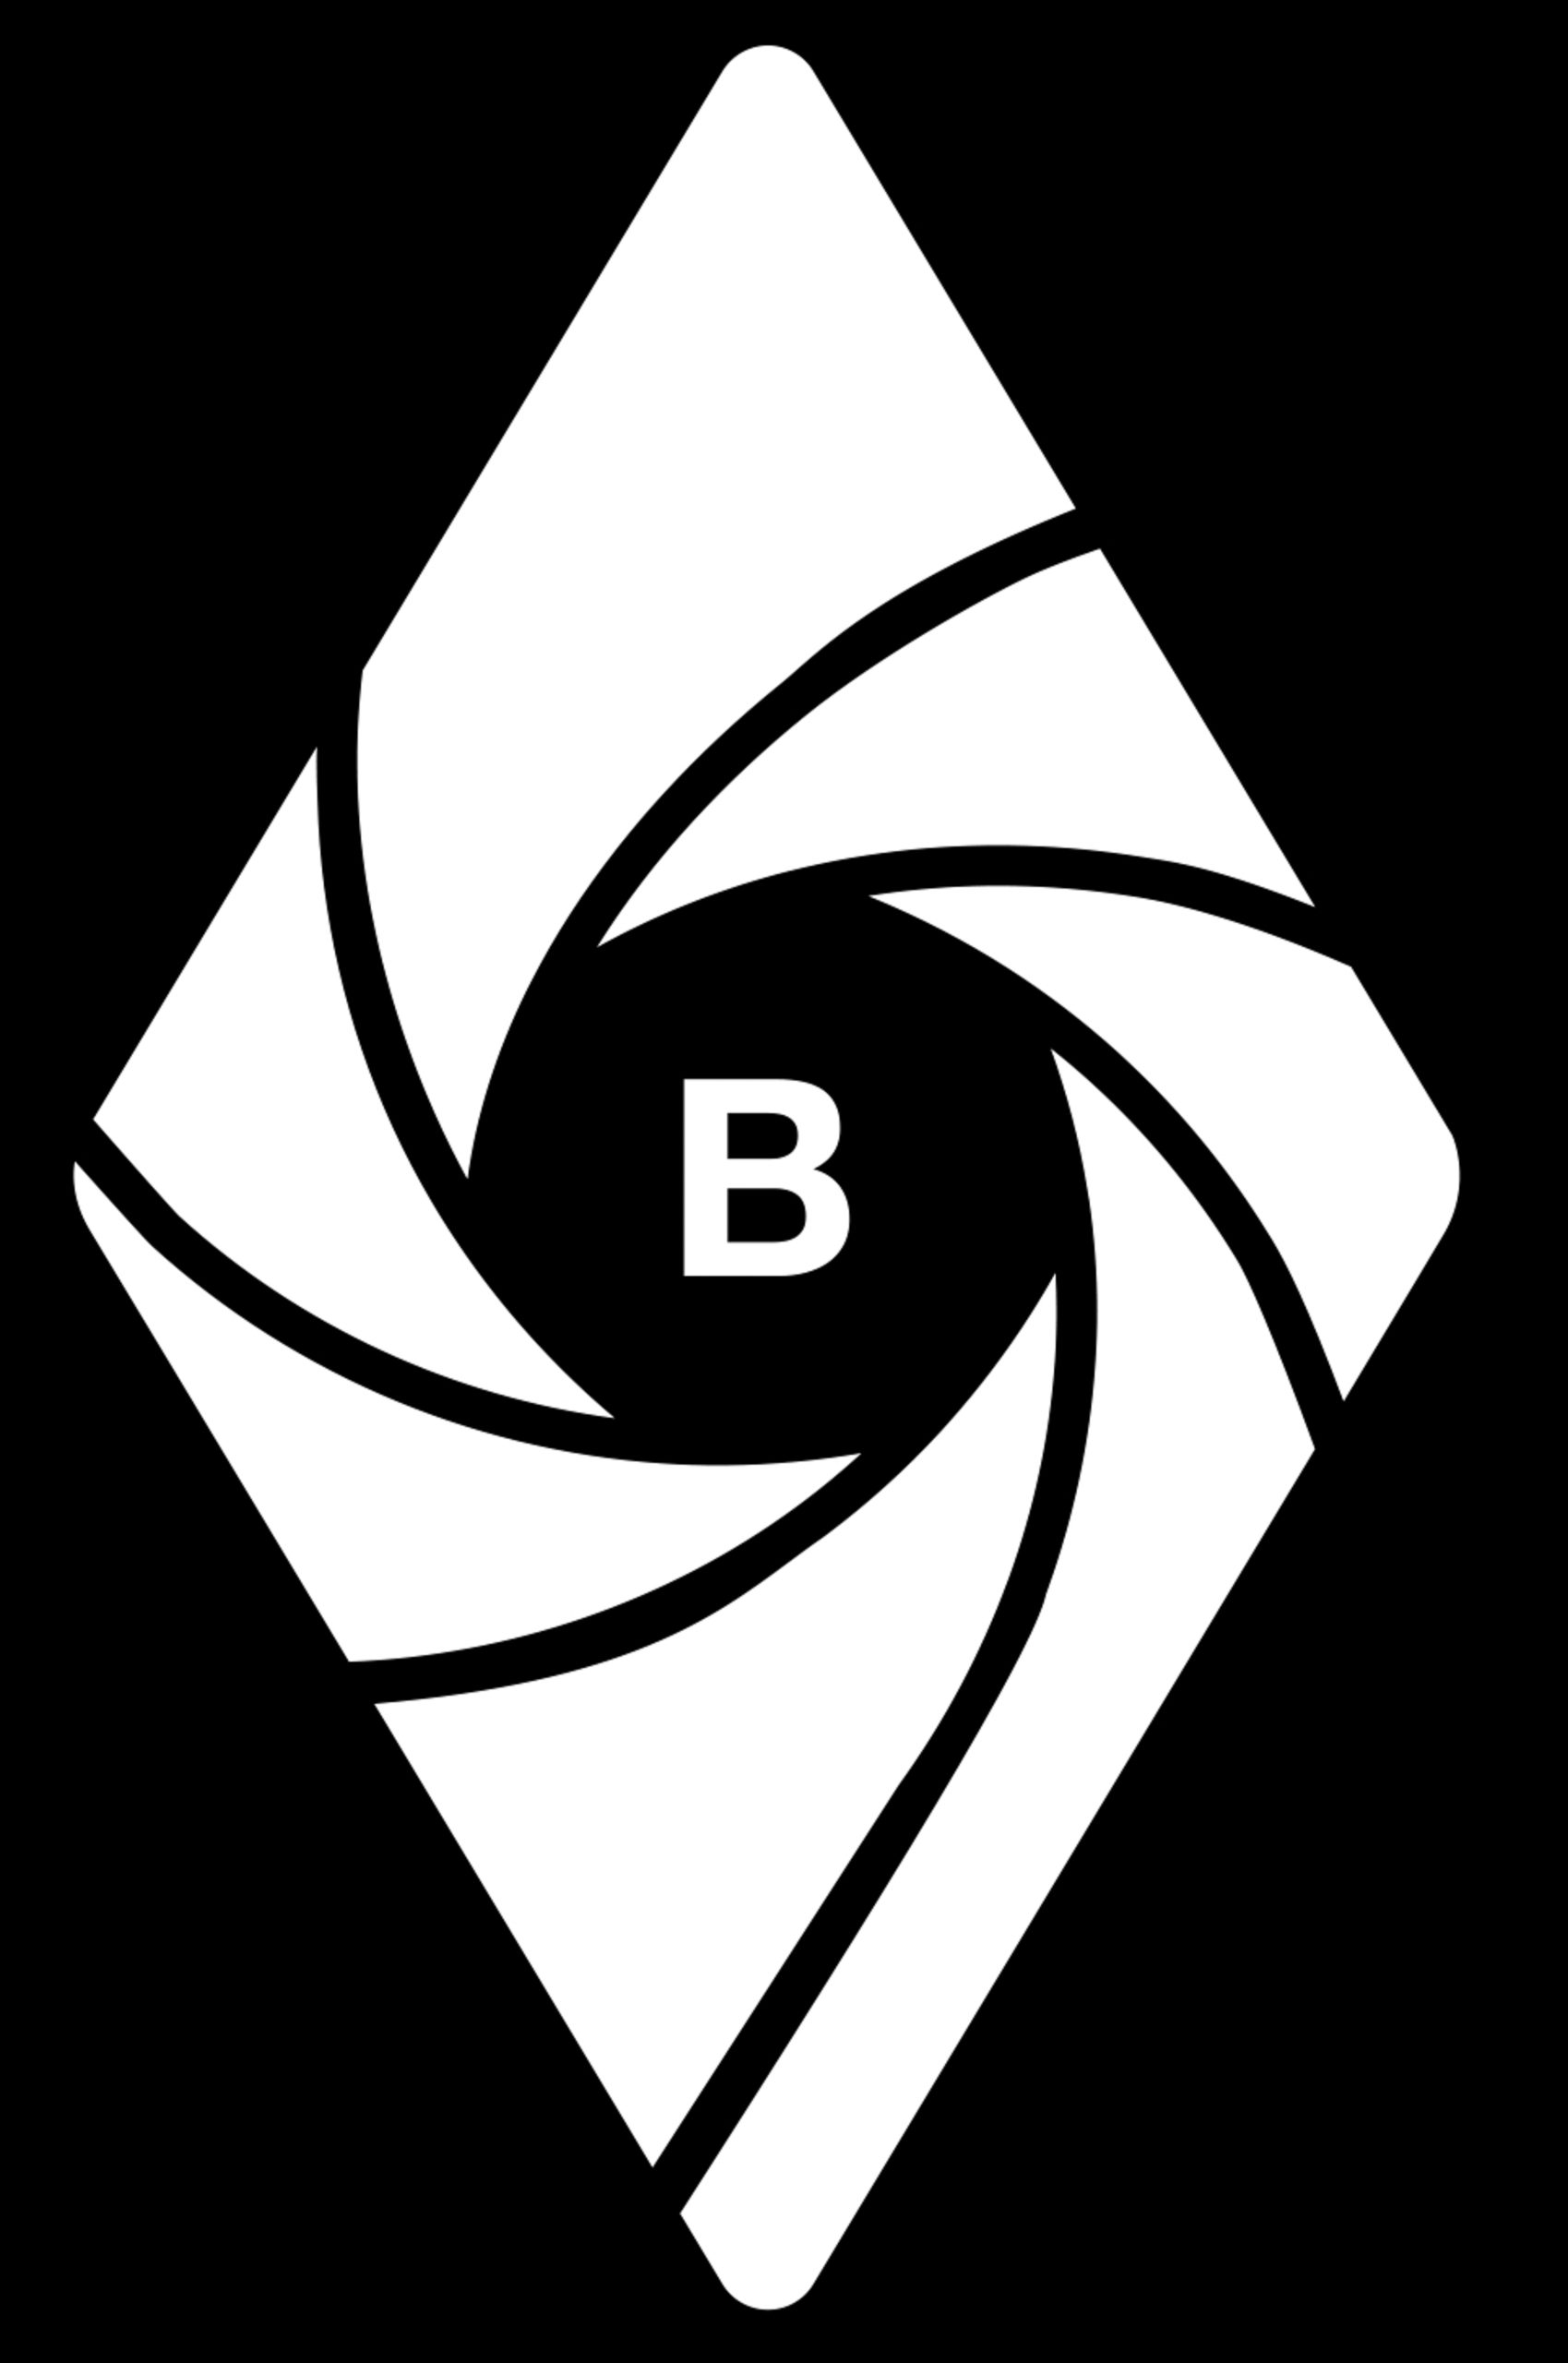 BPS LogoWhite on Black Rombus jpg